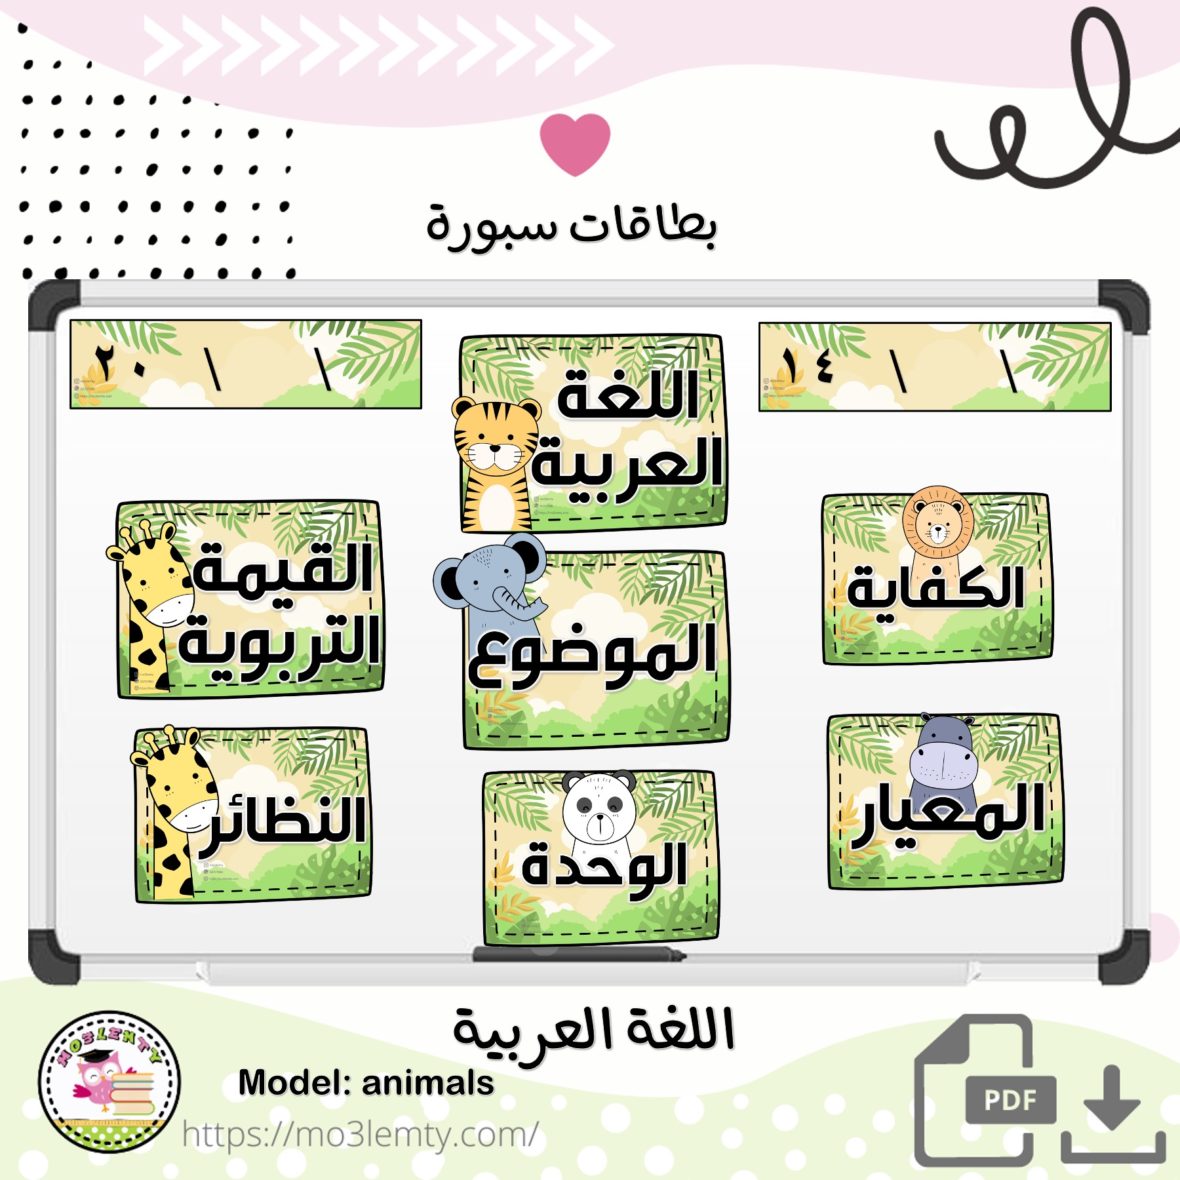 بطاقات سبورة اللغة العربية- حيوانات